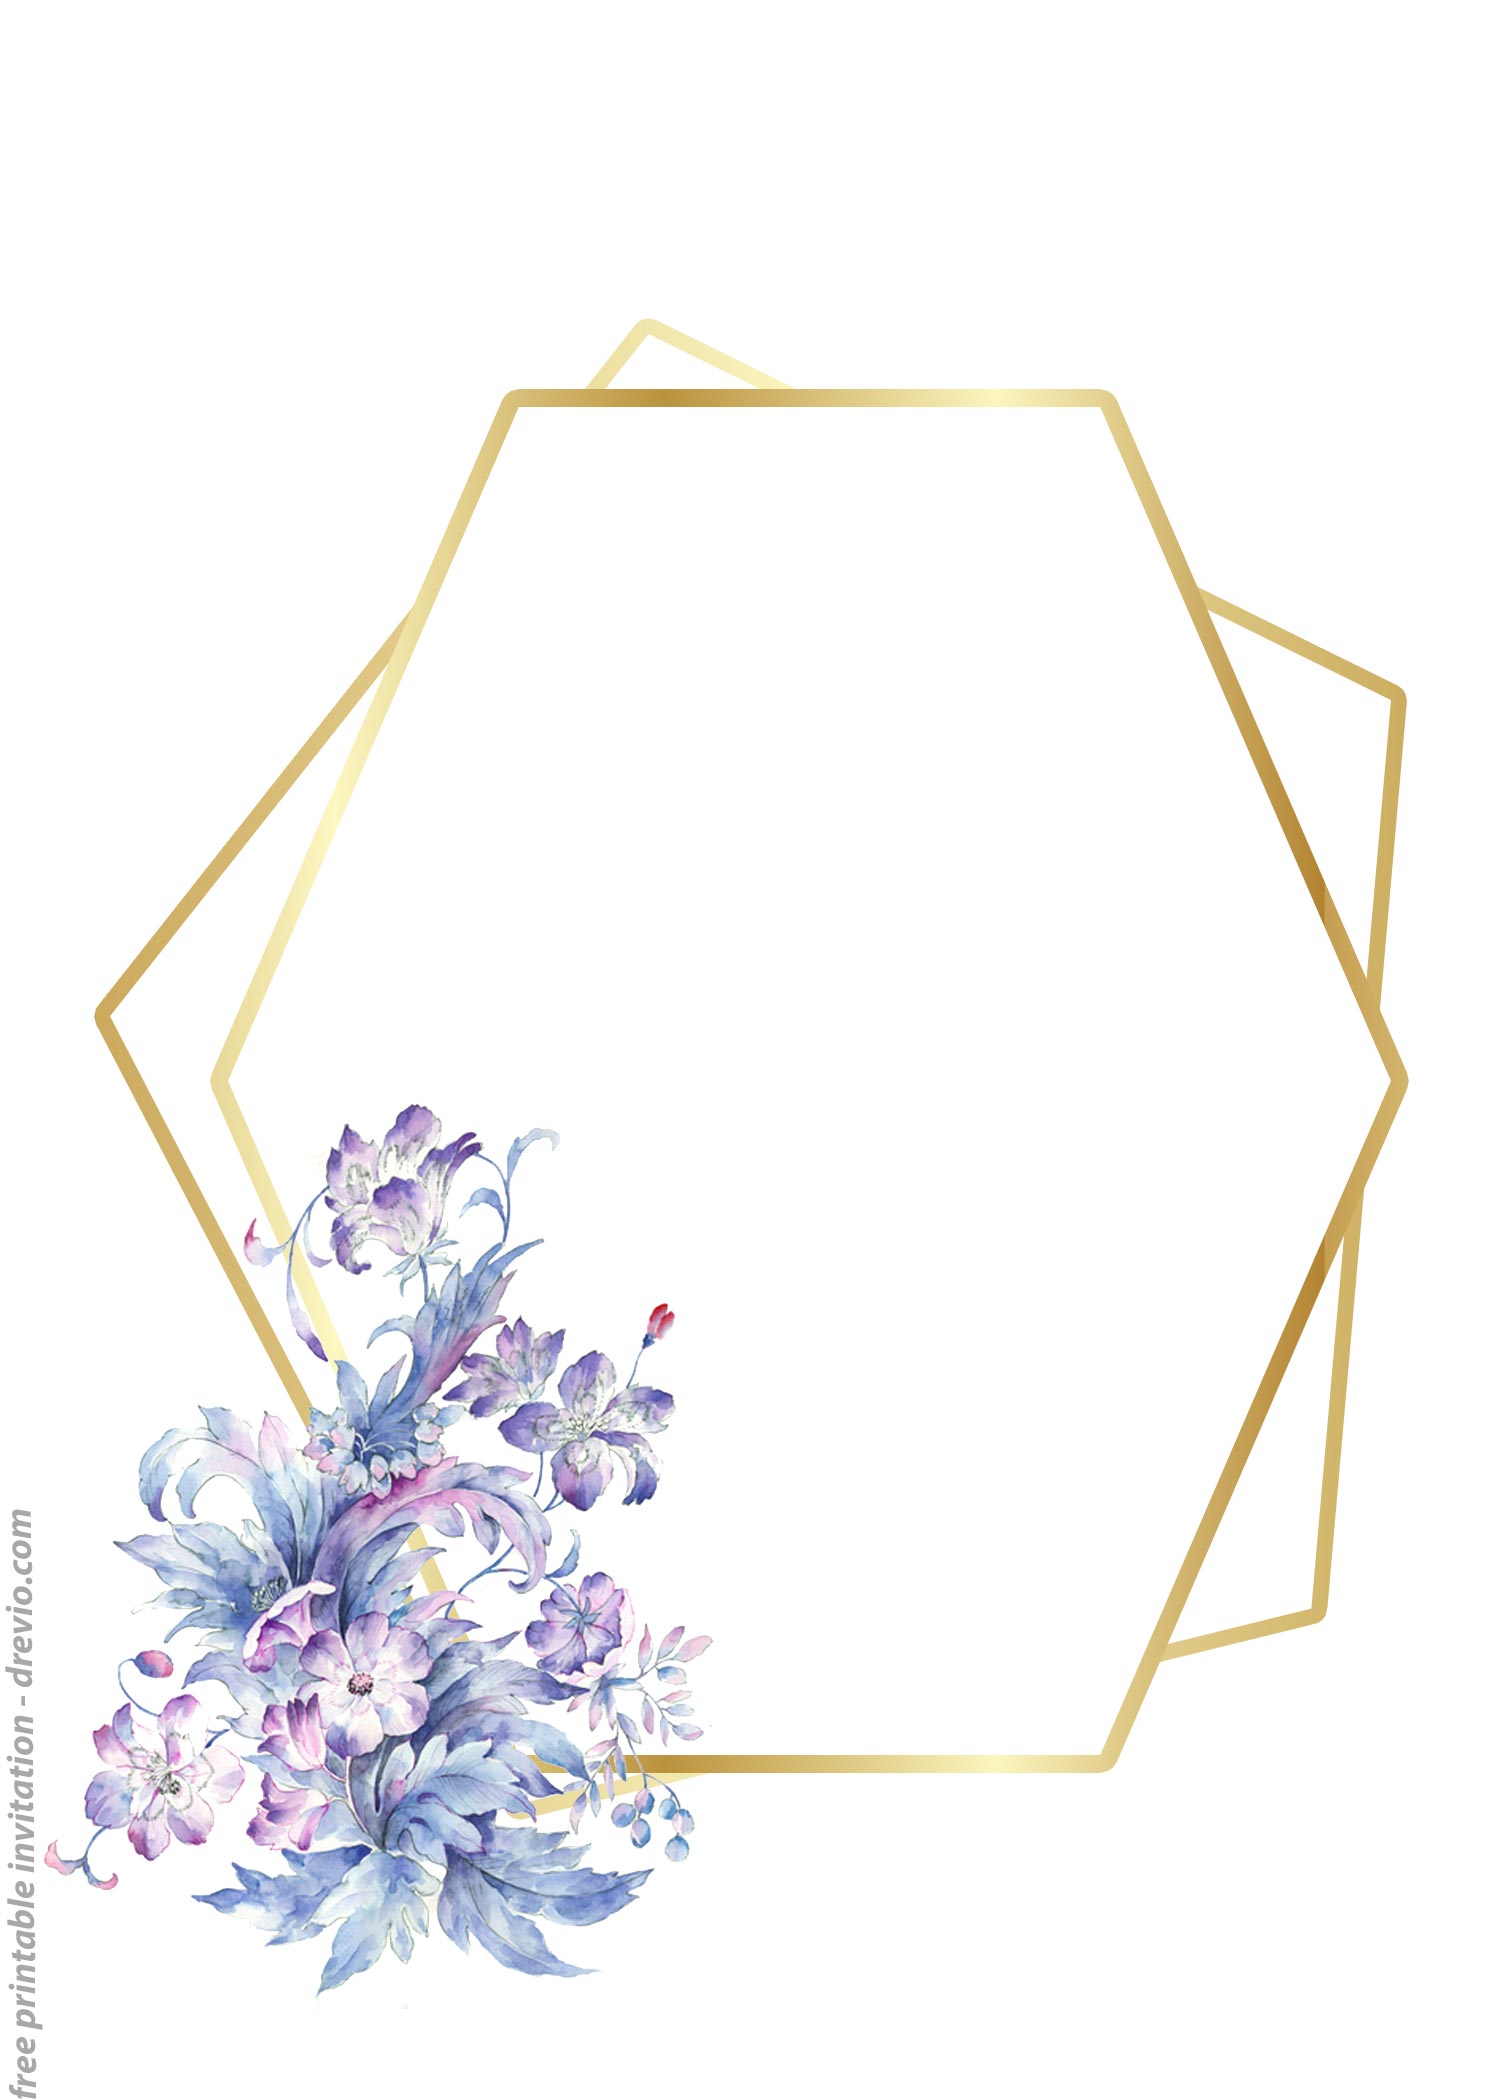 FREE-Printable-Floral-Simple-Purple-Invitation-Templates